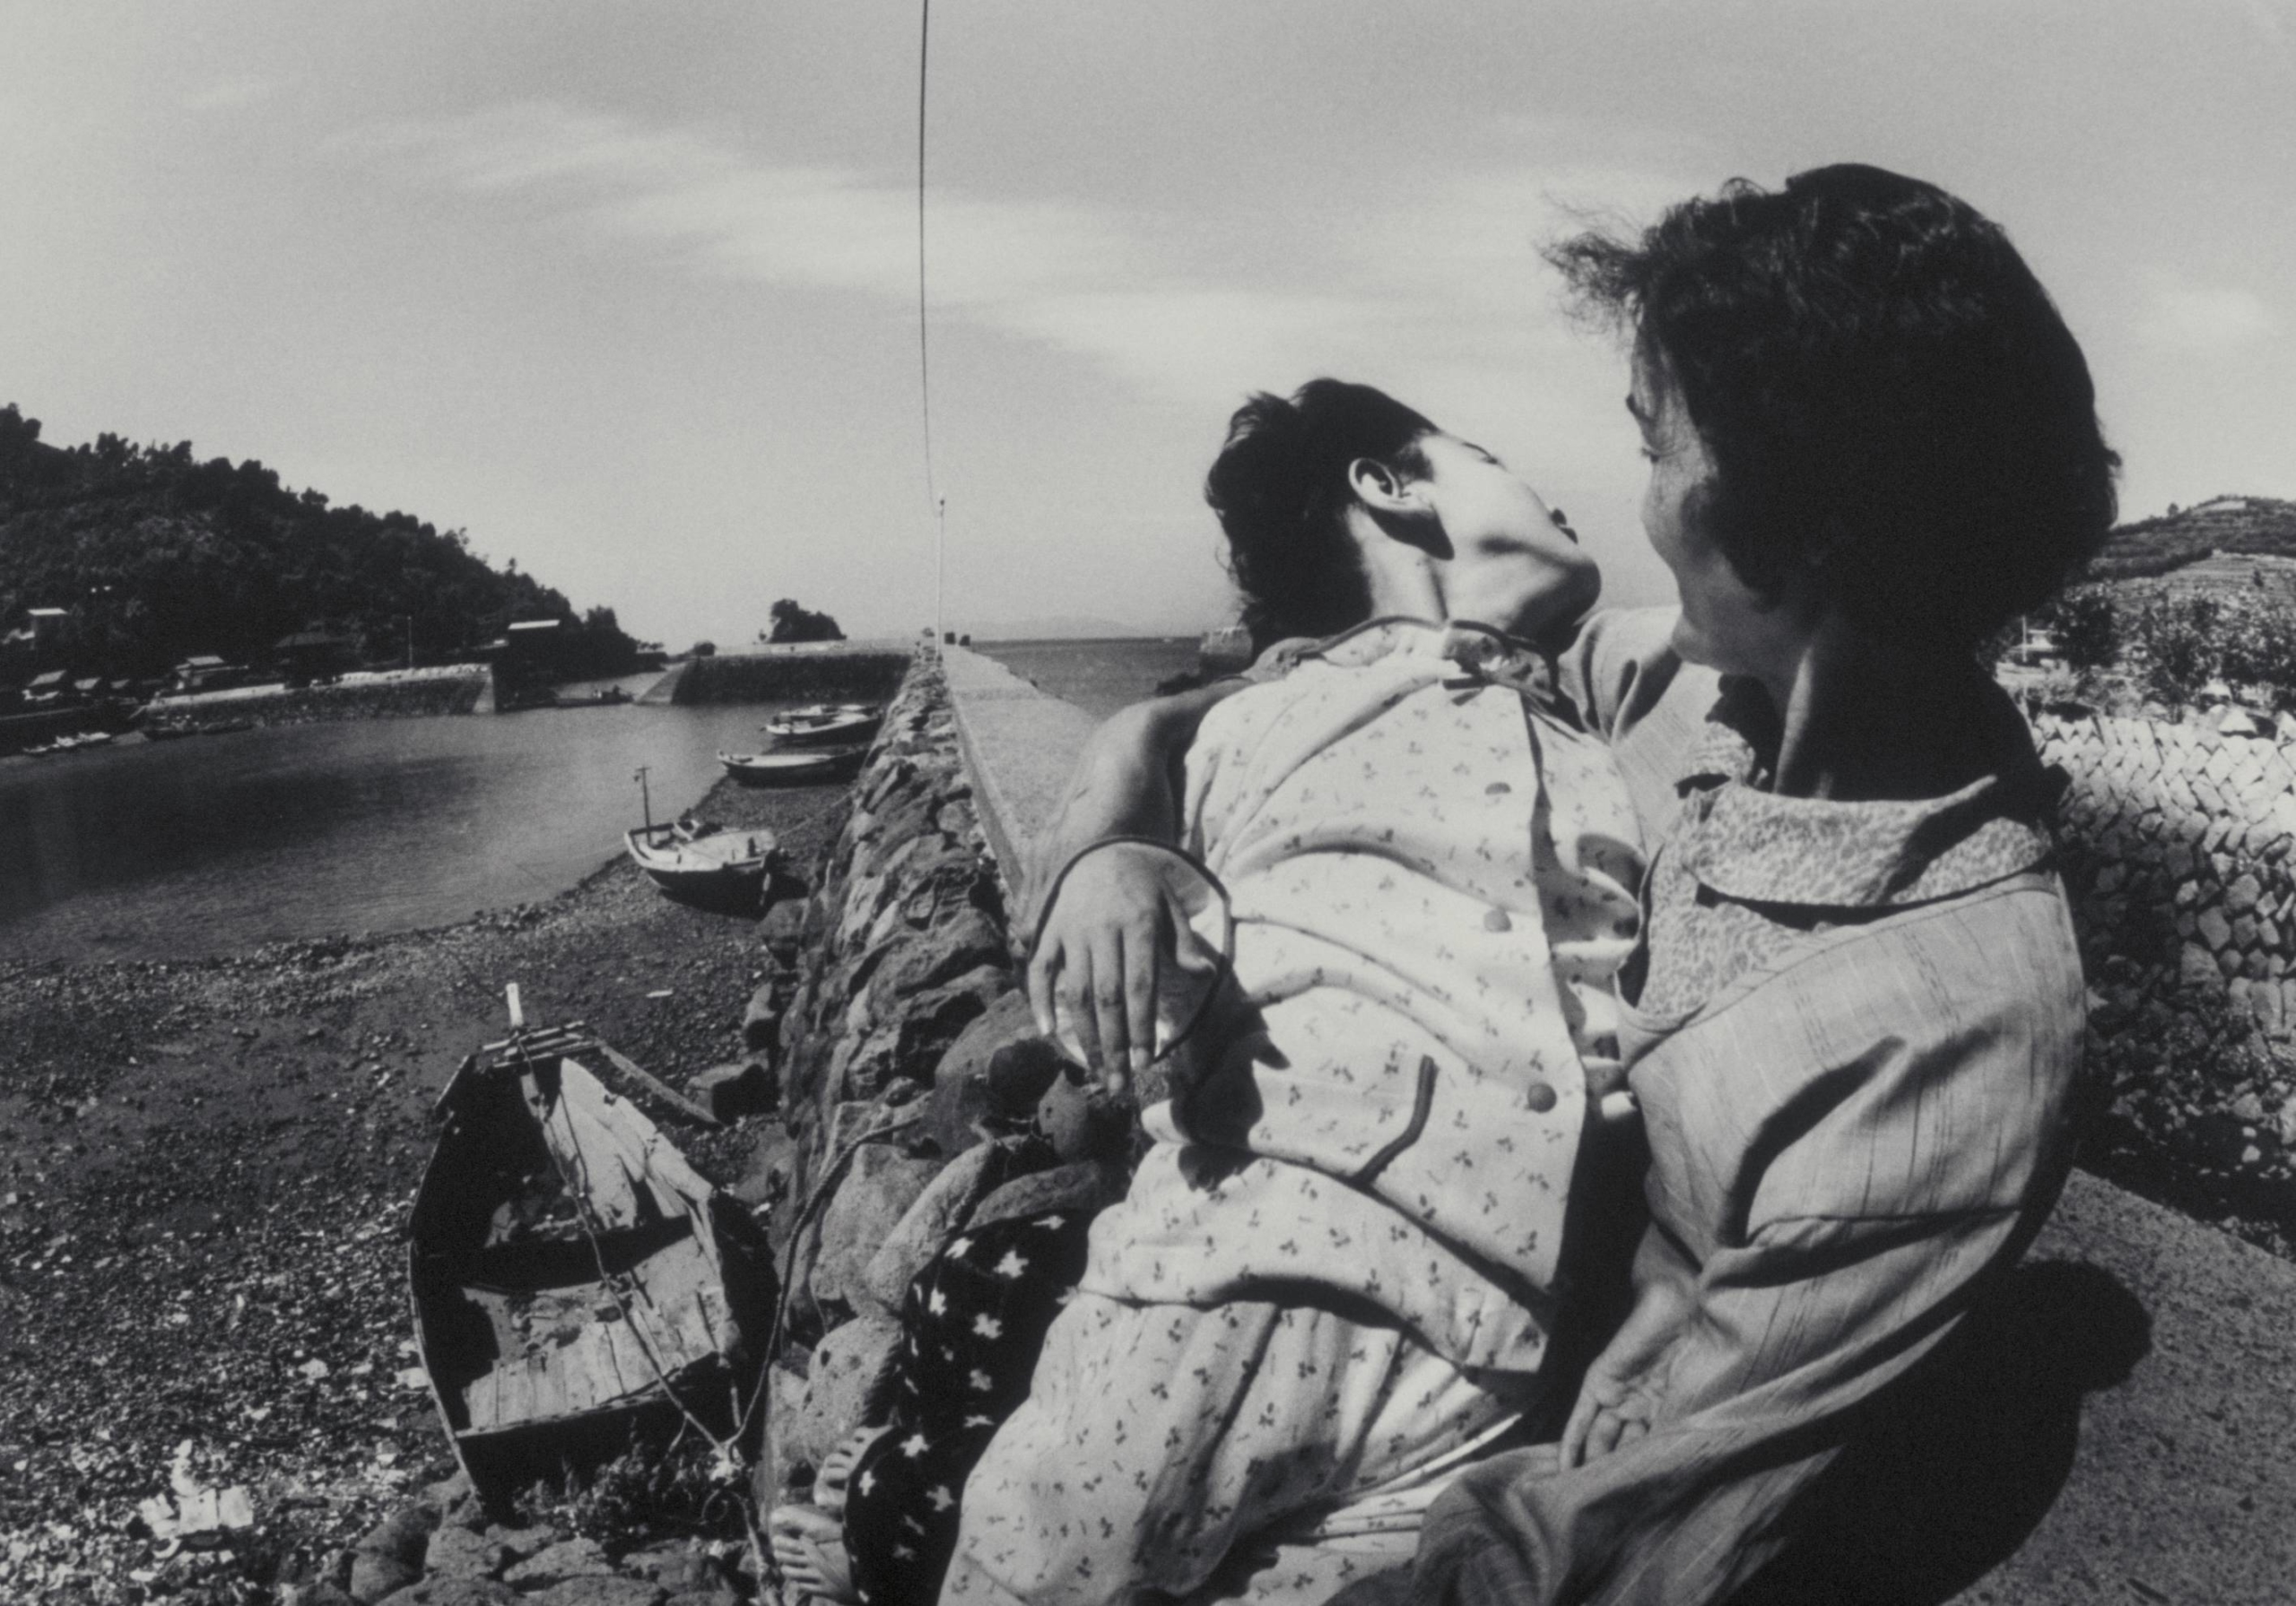 Et sort/hvidt fotografi af en mor, der holder sit barn, deformeret af methylkviksølvforgiftning, nær Minamata-bugten.